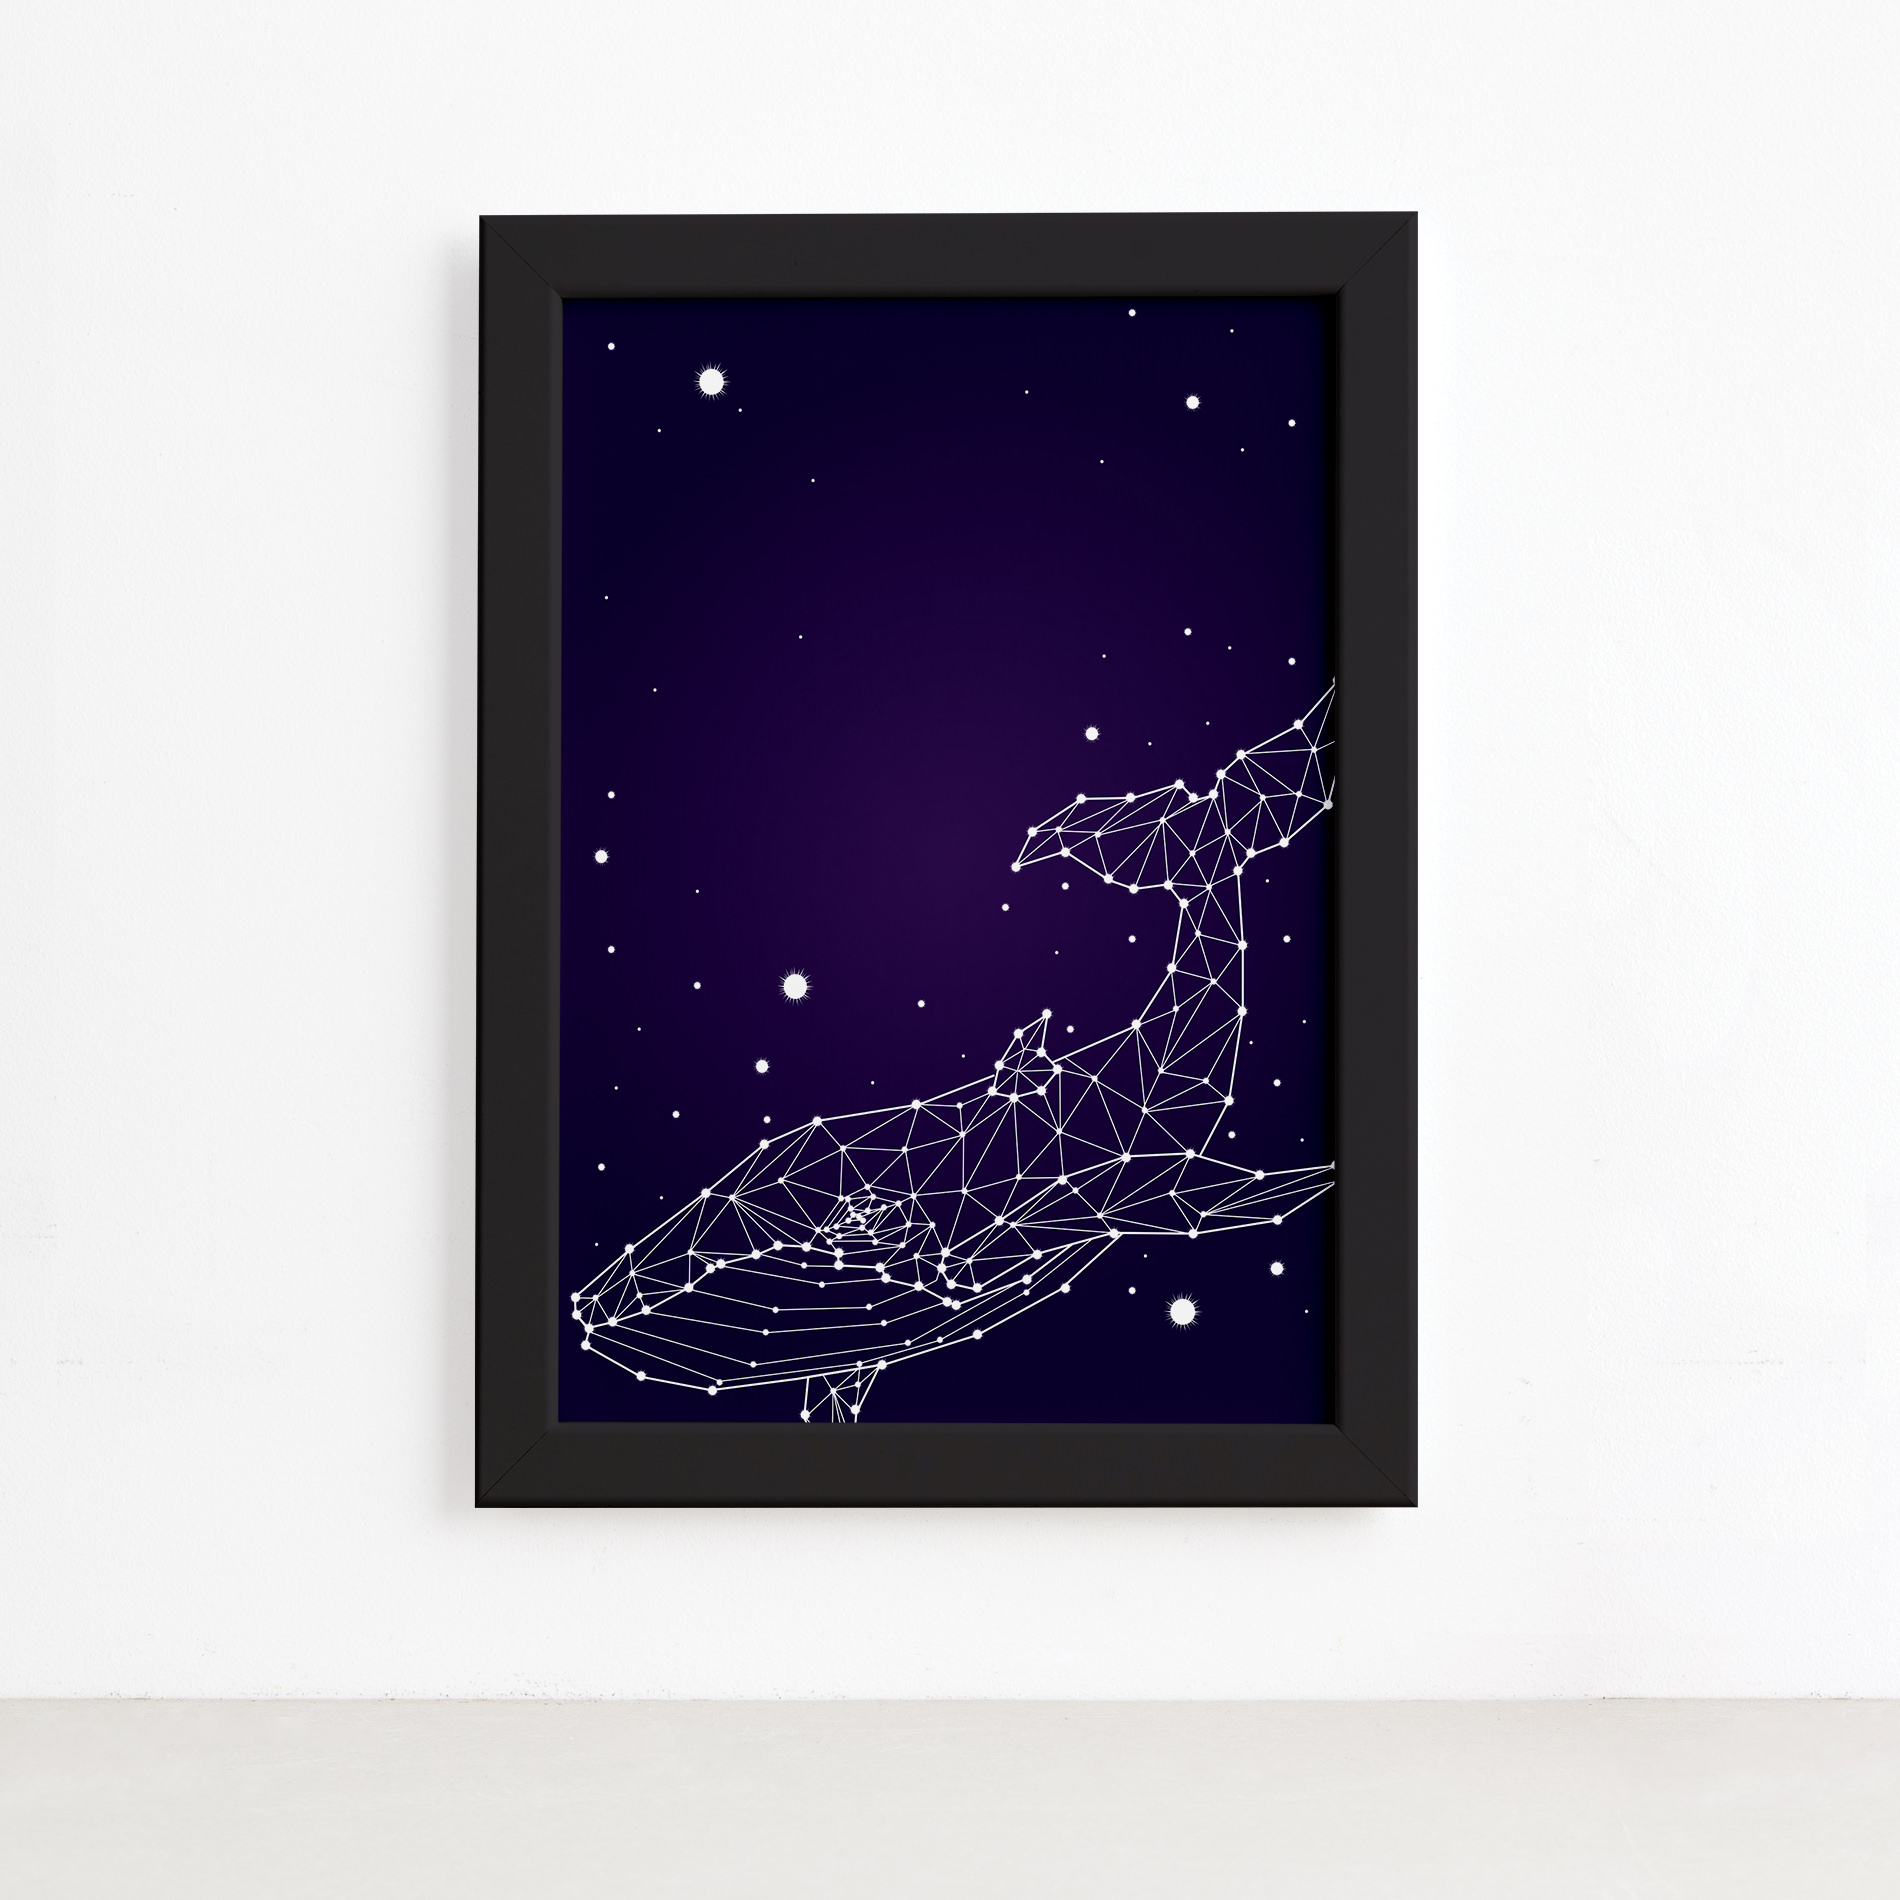 Quadro Constelação Baleia Moldura Preta 22x32cm,Quadro Constelação Baleia Moldura Preta 22x32cm